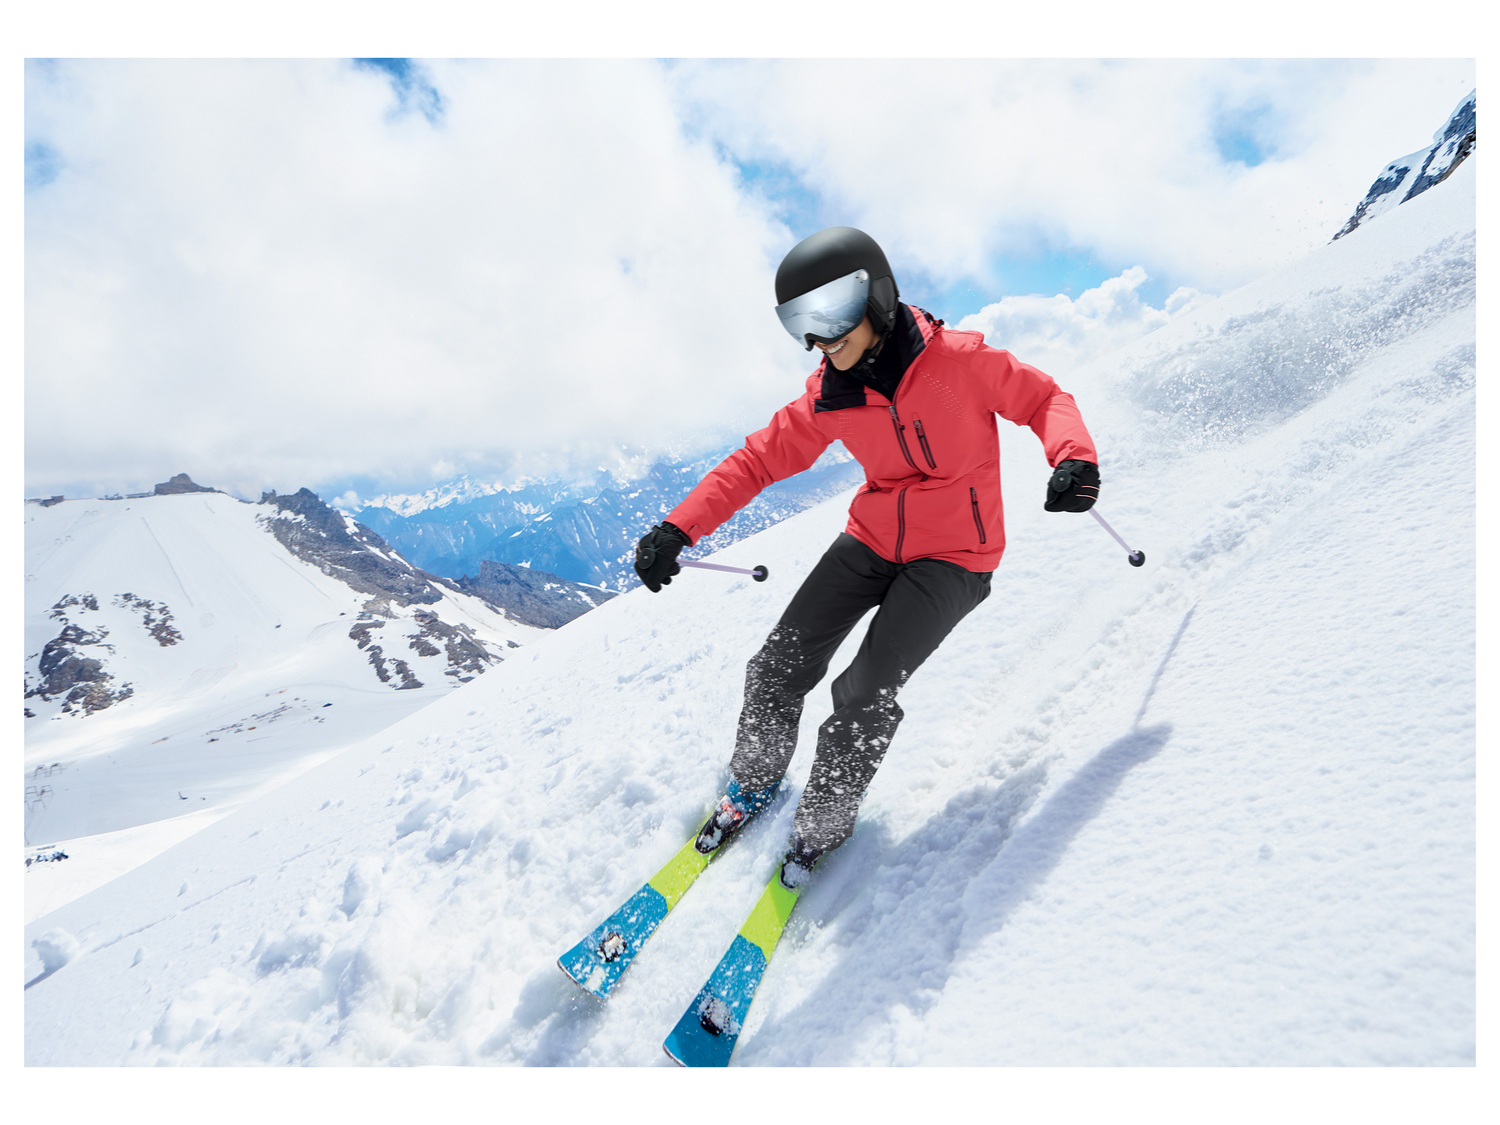 Pantalon de ski femme , le prix 17.99 € 
- Du 38 au 48 selon modèle
- Ex. ...